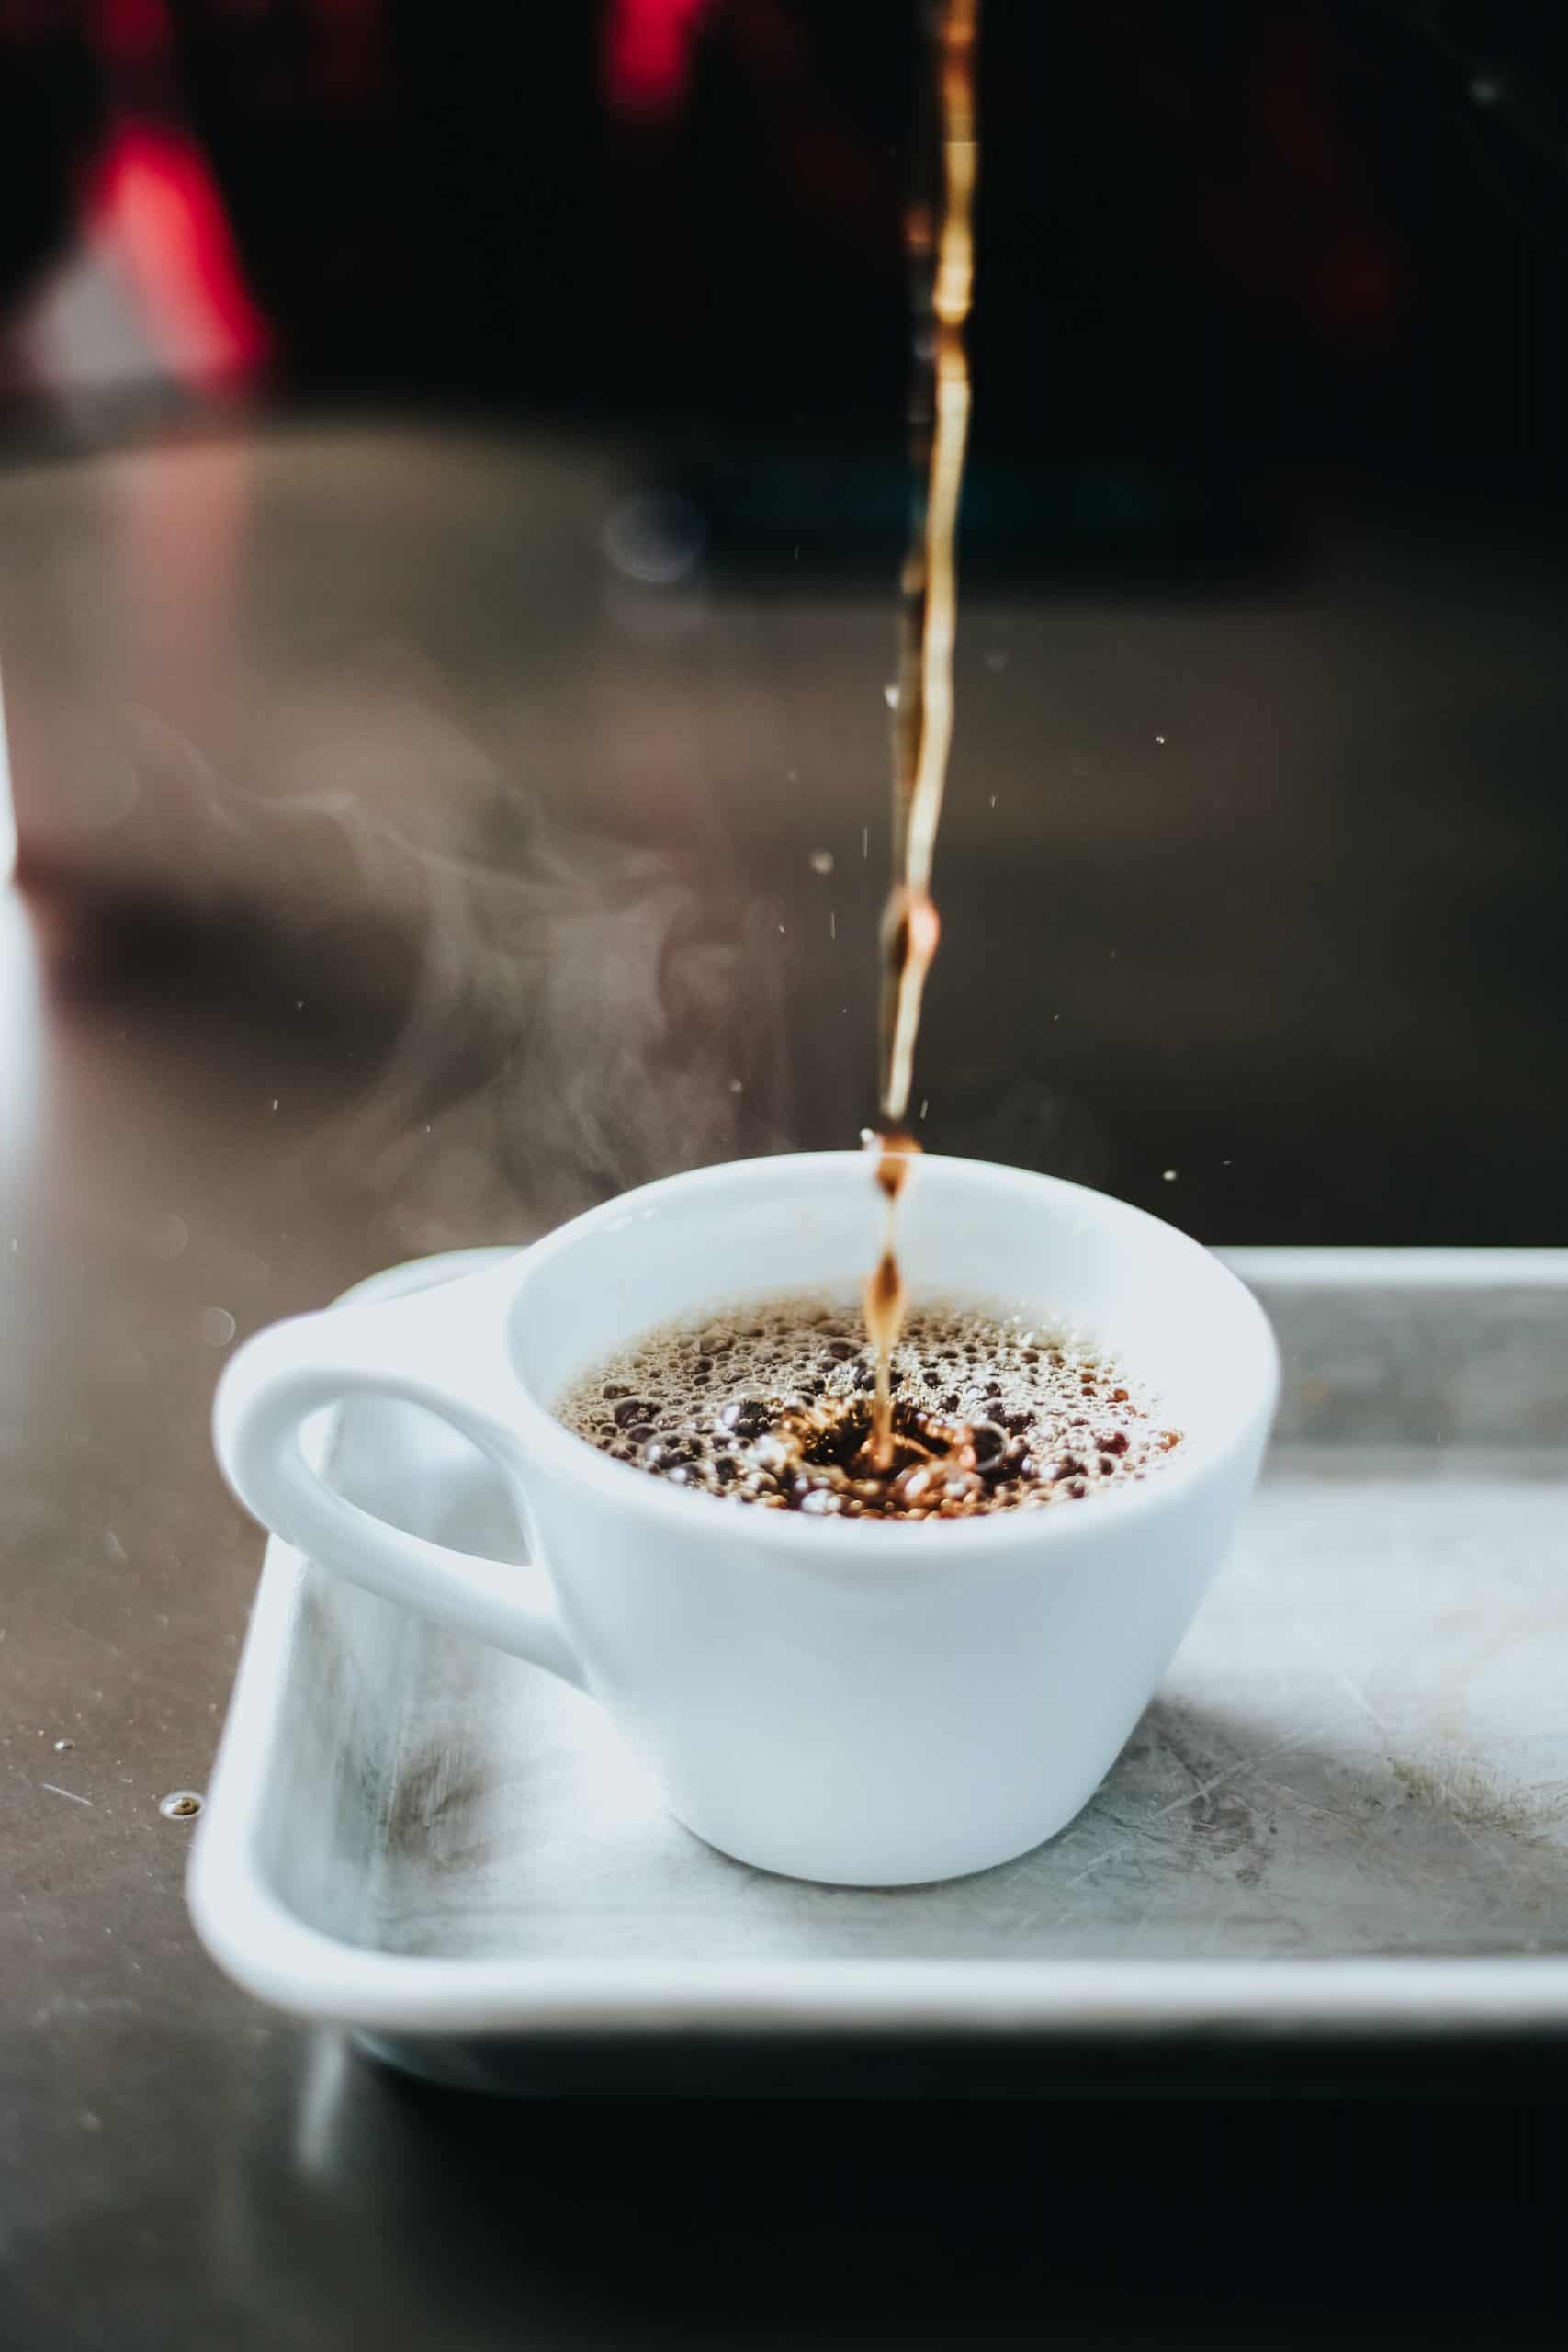 Jaką rolę pełni palarnia kawy?